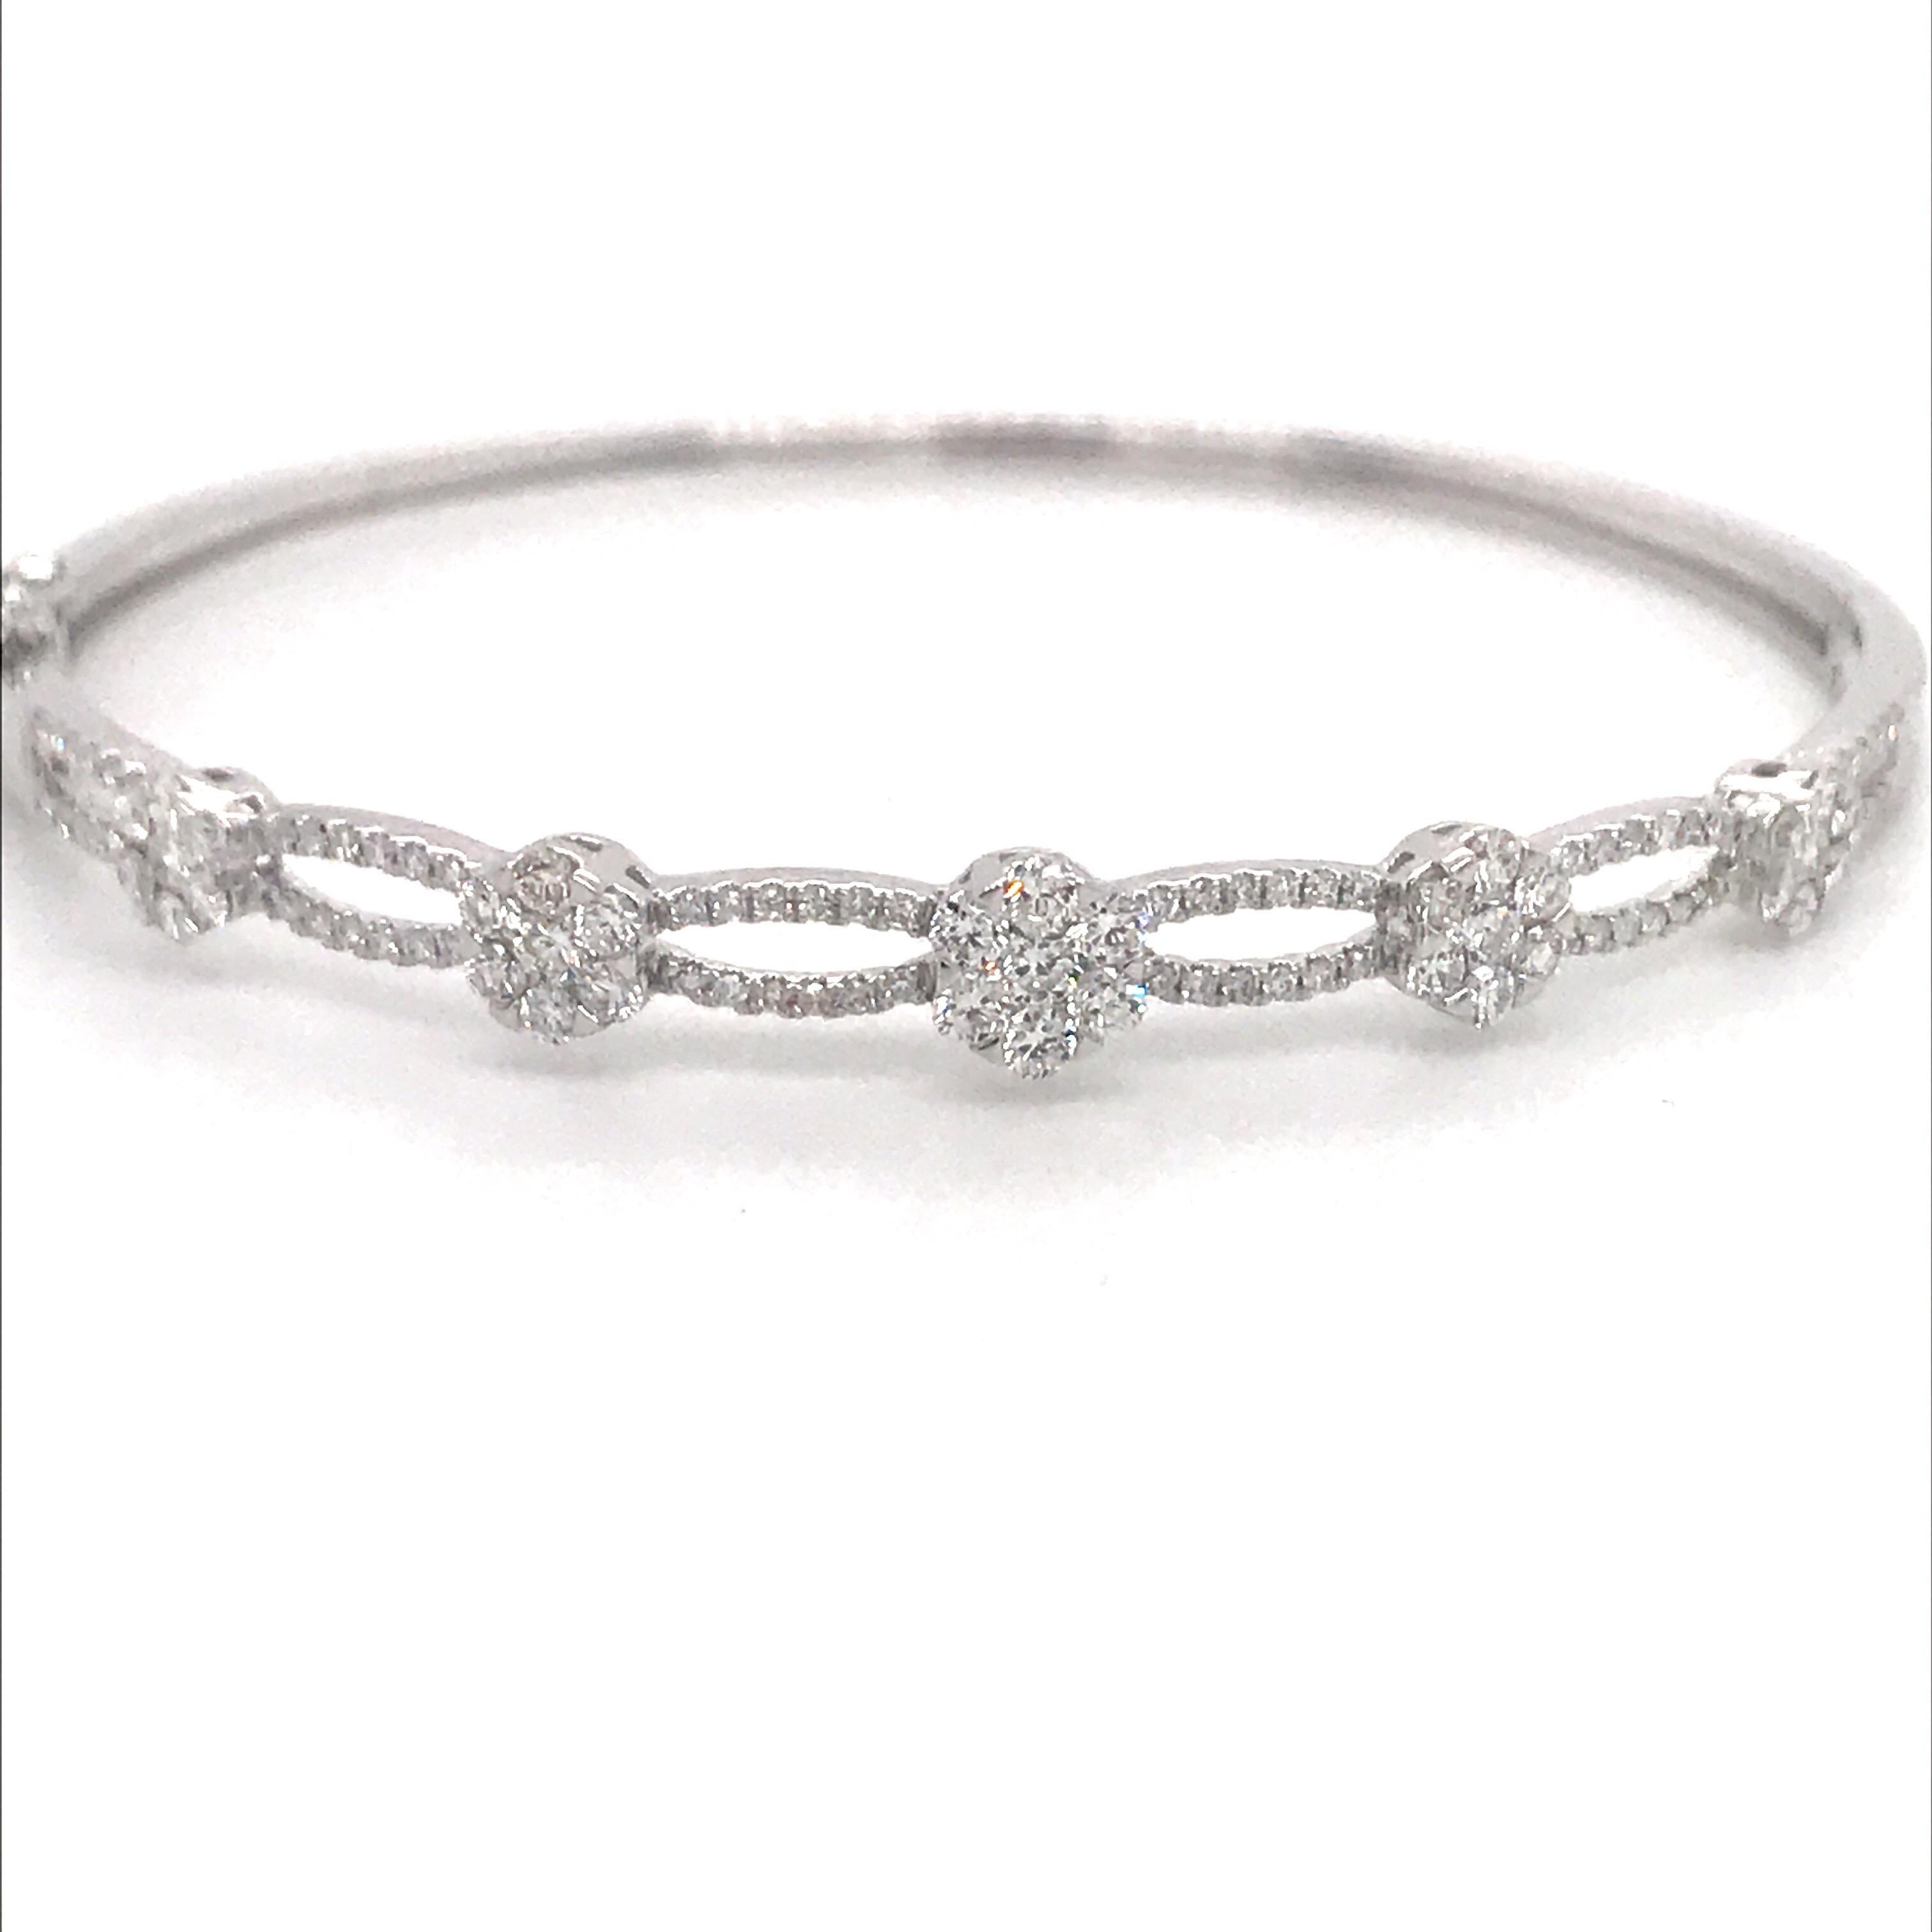 bracelet en or blanc 18 carats avec motif floral et tourbillon en diamant gradué pesant 1,24 carats.
Couleur G-H
Clarity SI